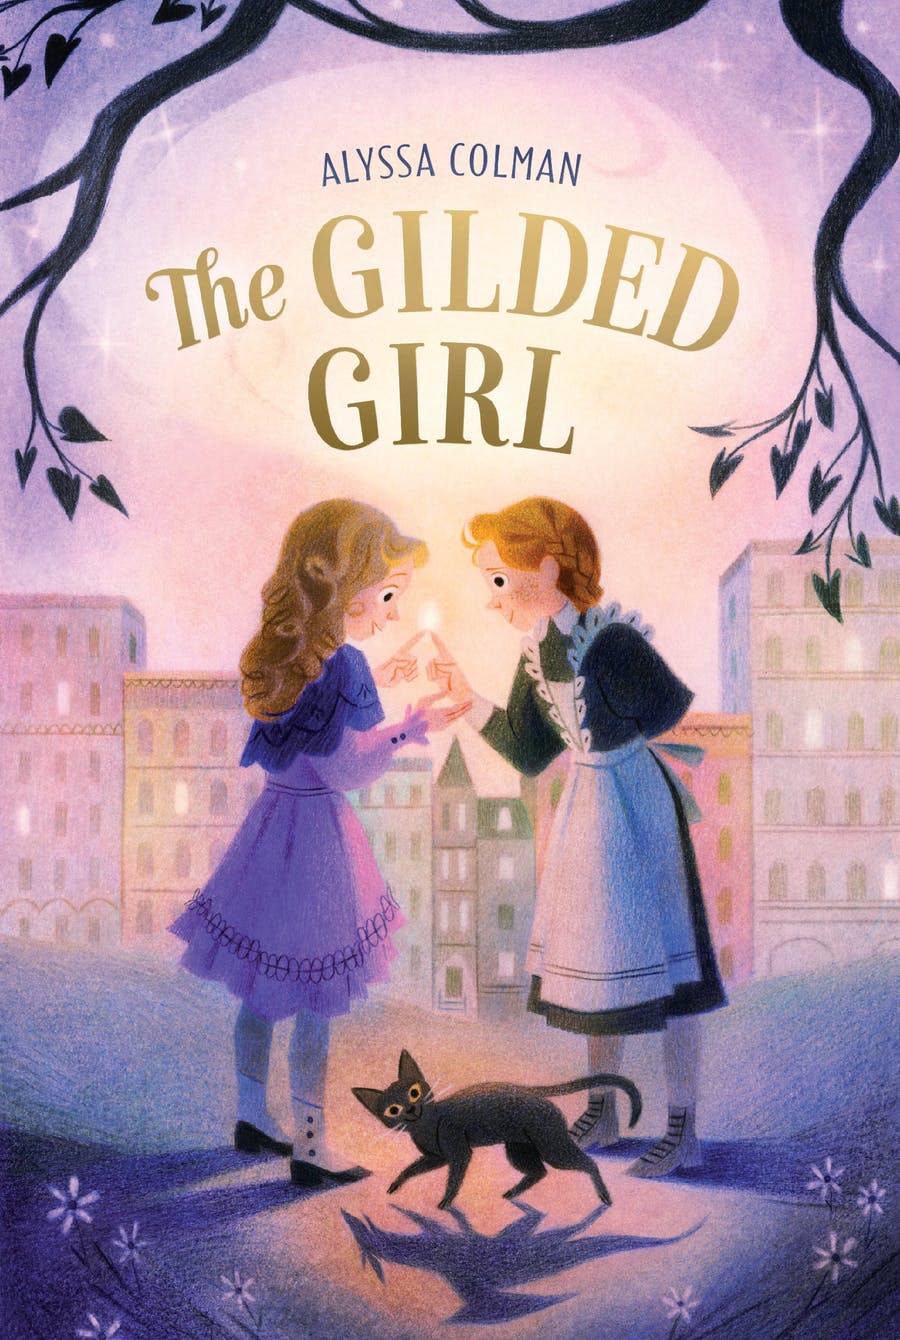 he-Gilded-Girl-333